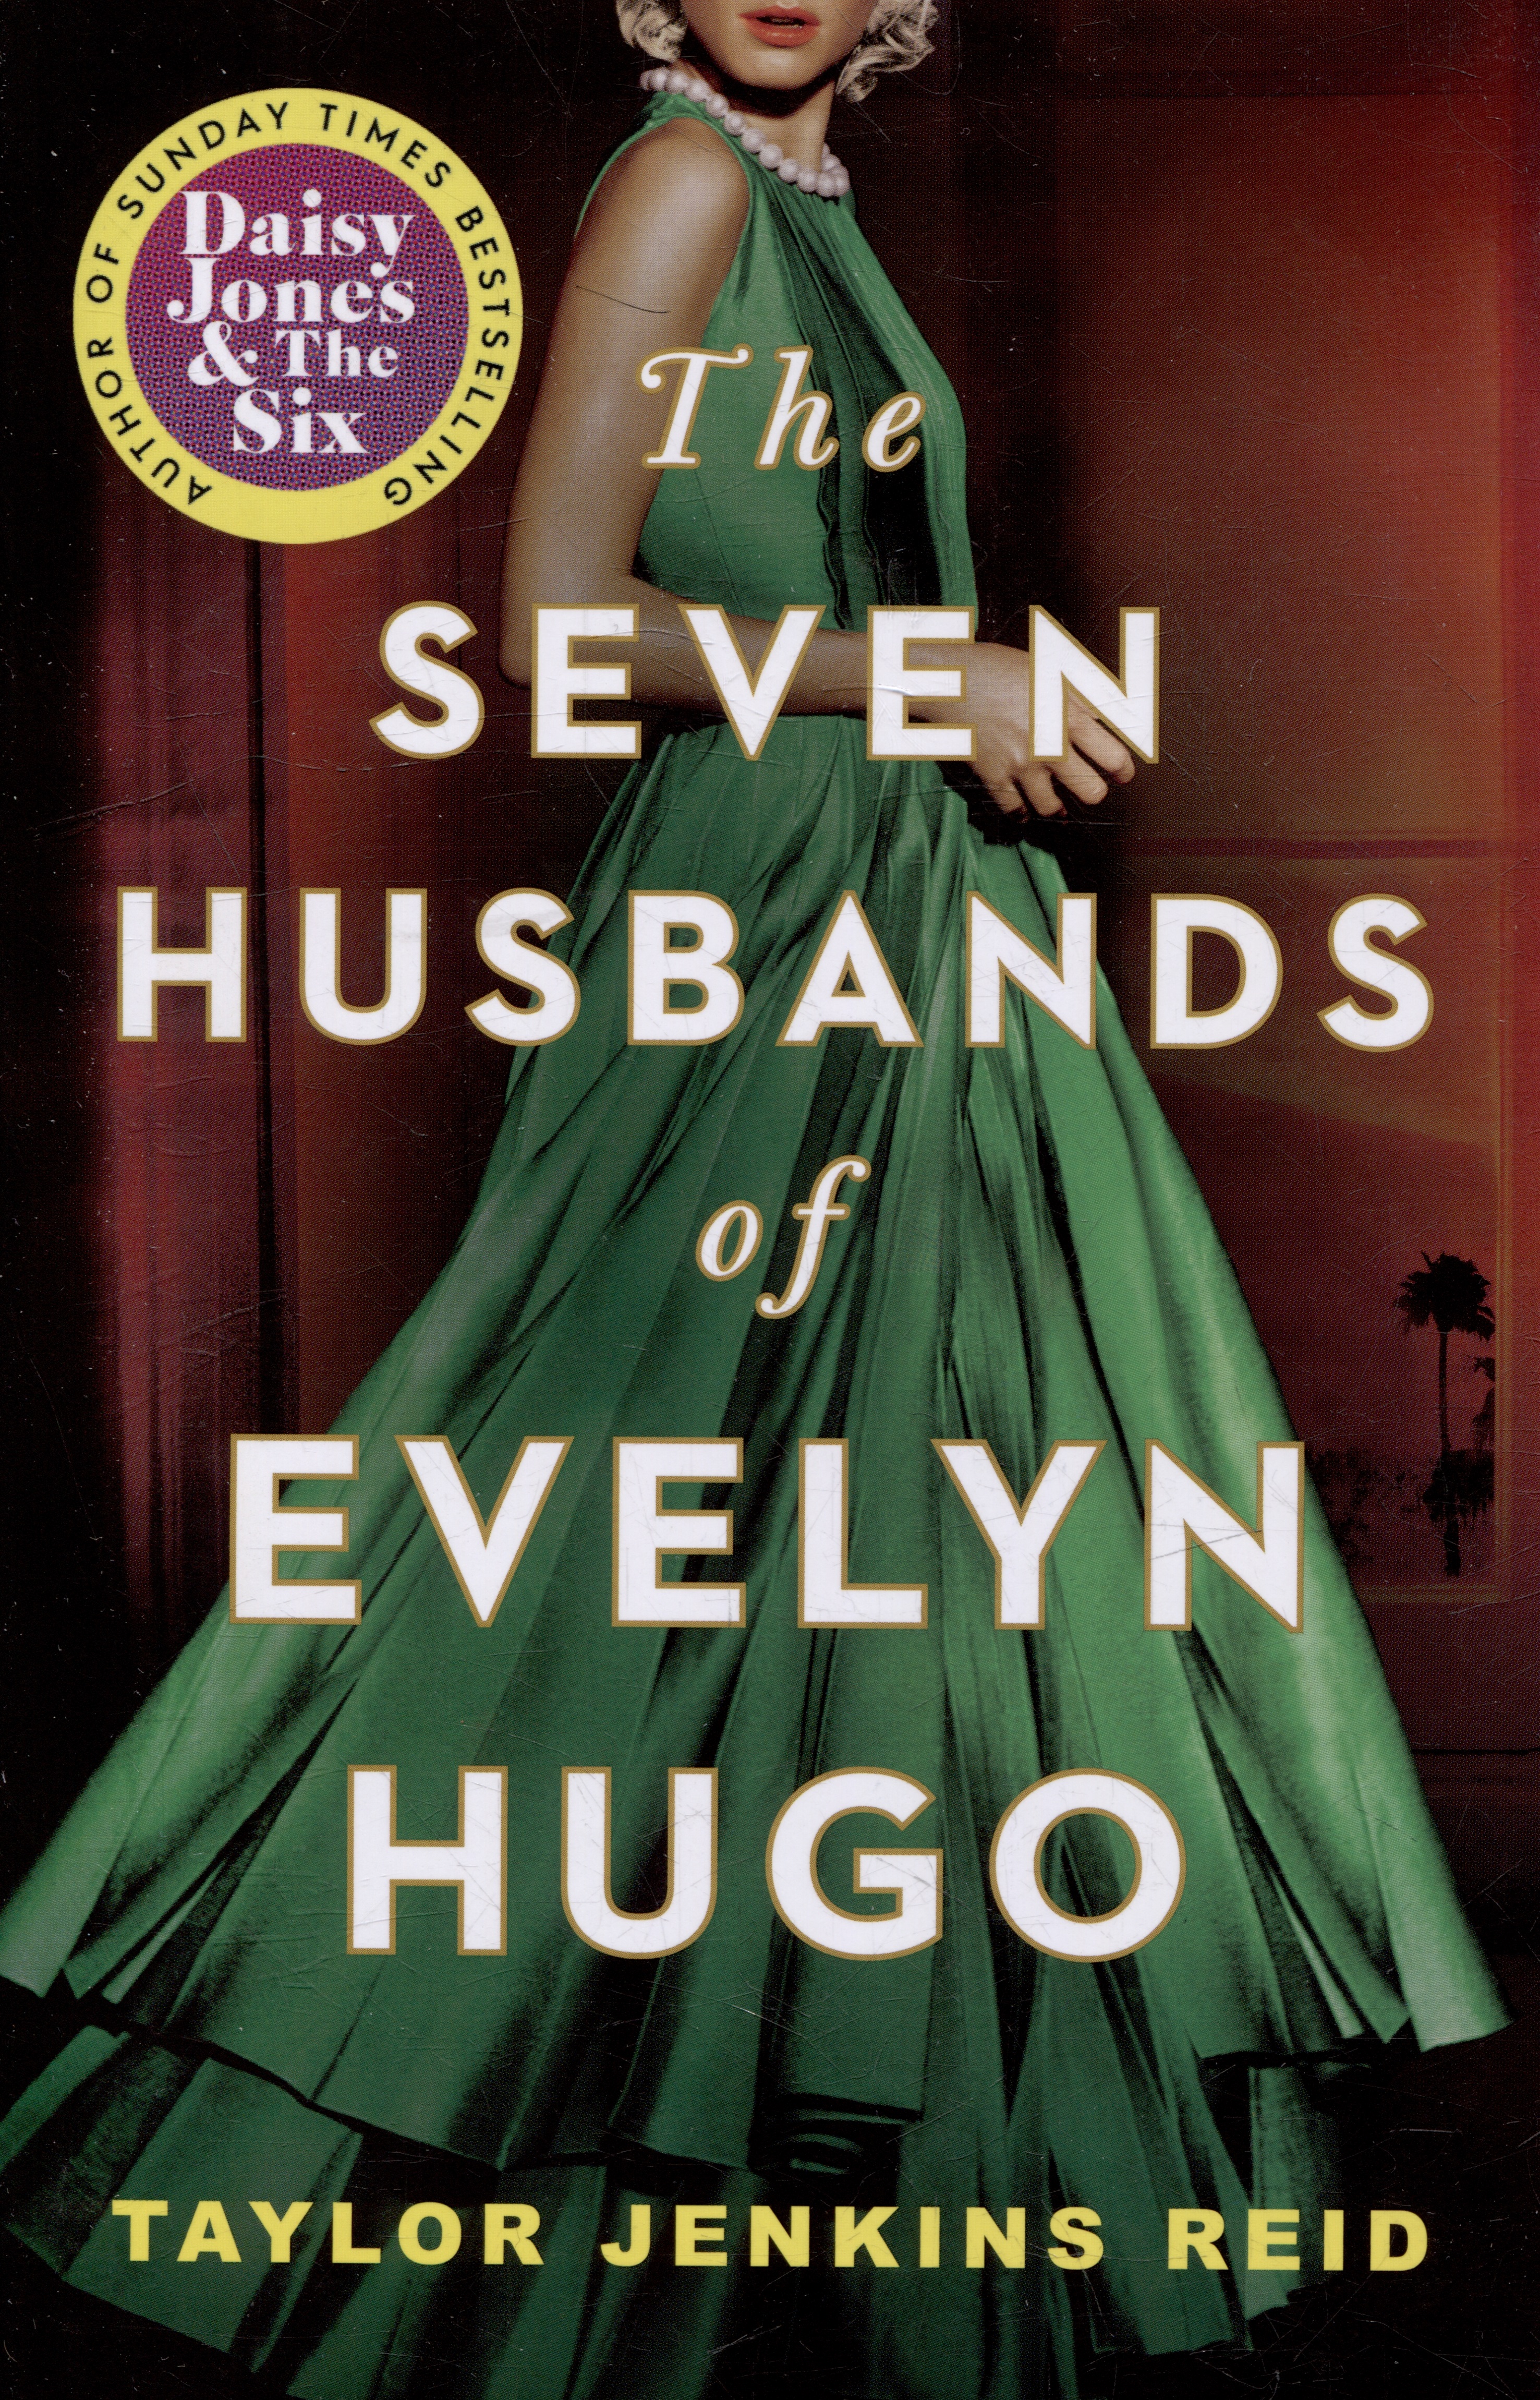 The Seven Husbands of Evelyn Hugo: A Novel reid taylor jenkins the seven husbands of evelyn hugo